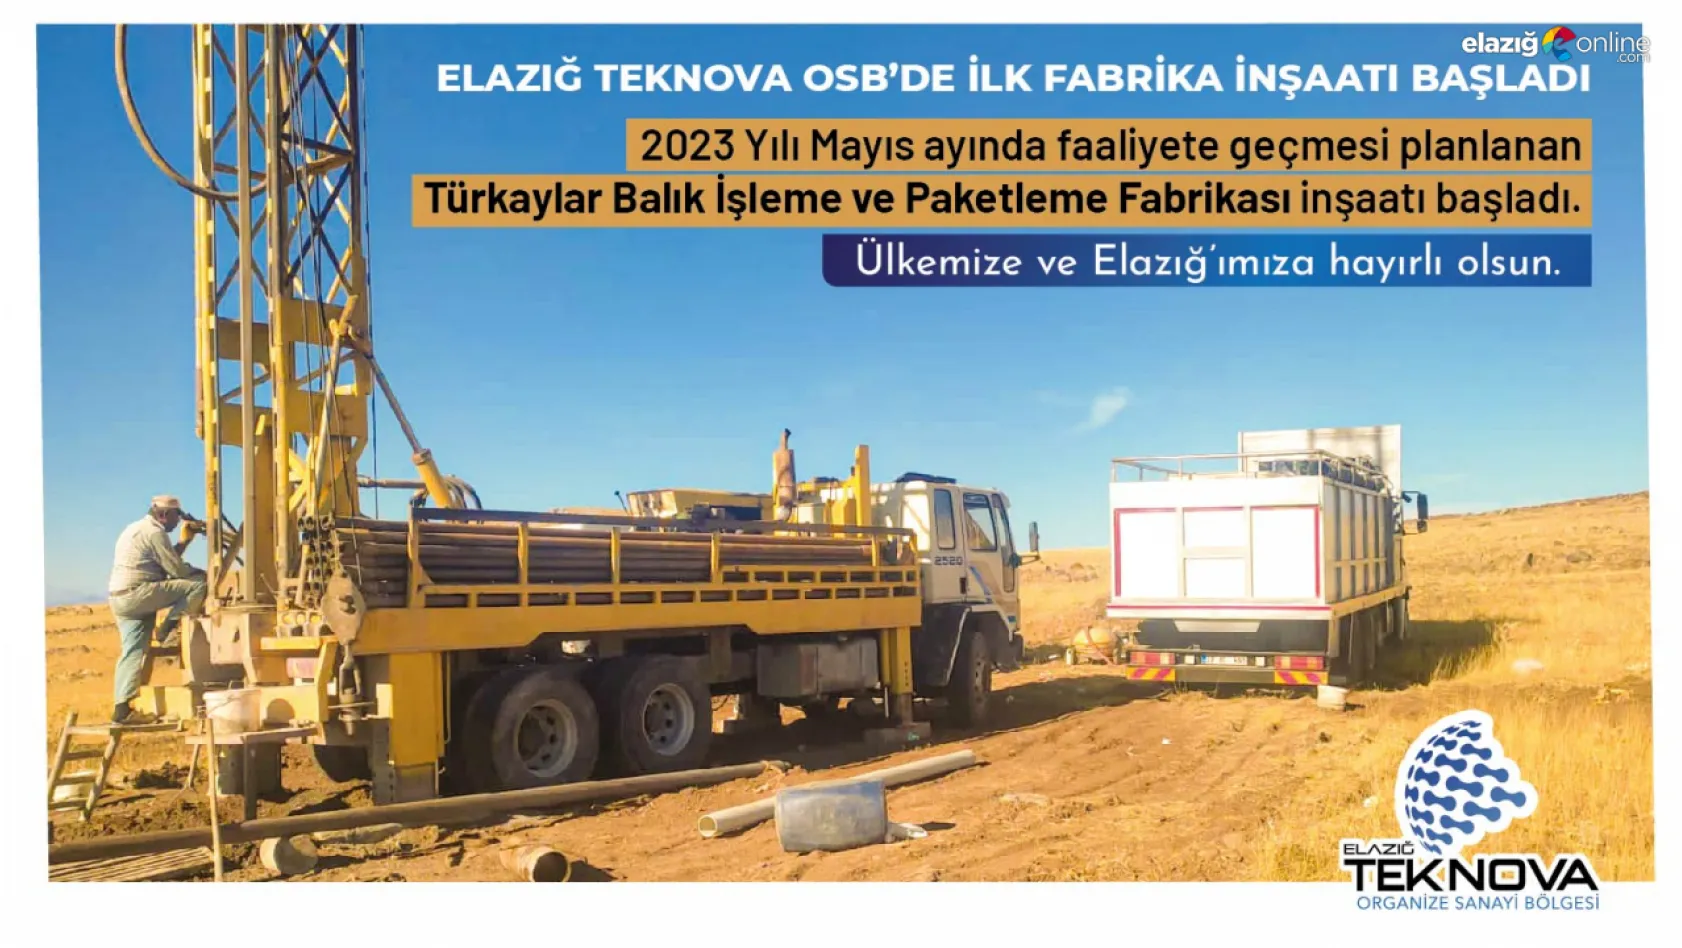 Elazığ'da yeni kurulan Teknova OSB'de ilk yatırım için kazma vuruluyor!